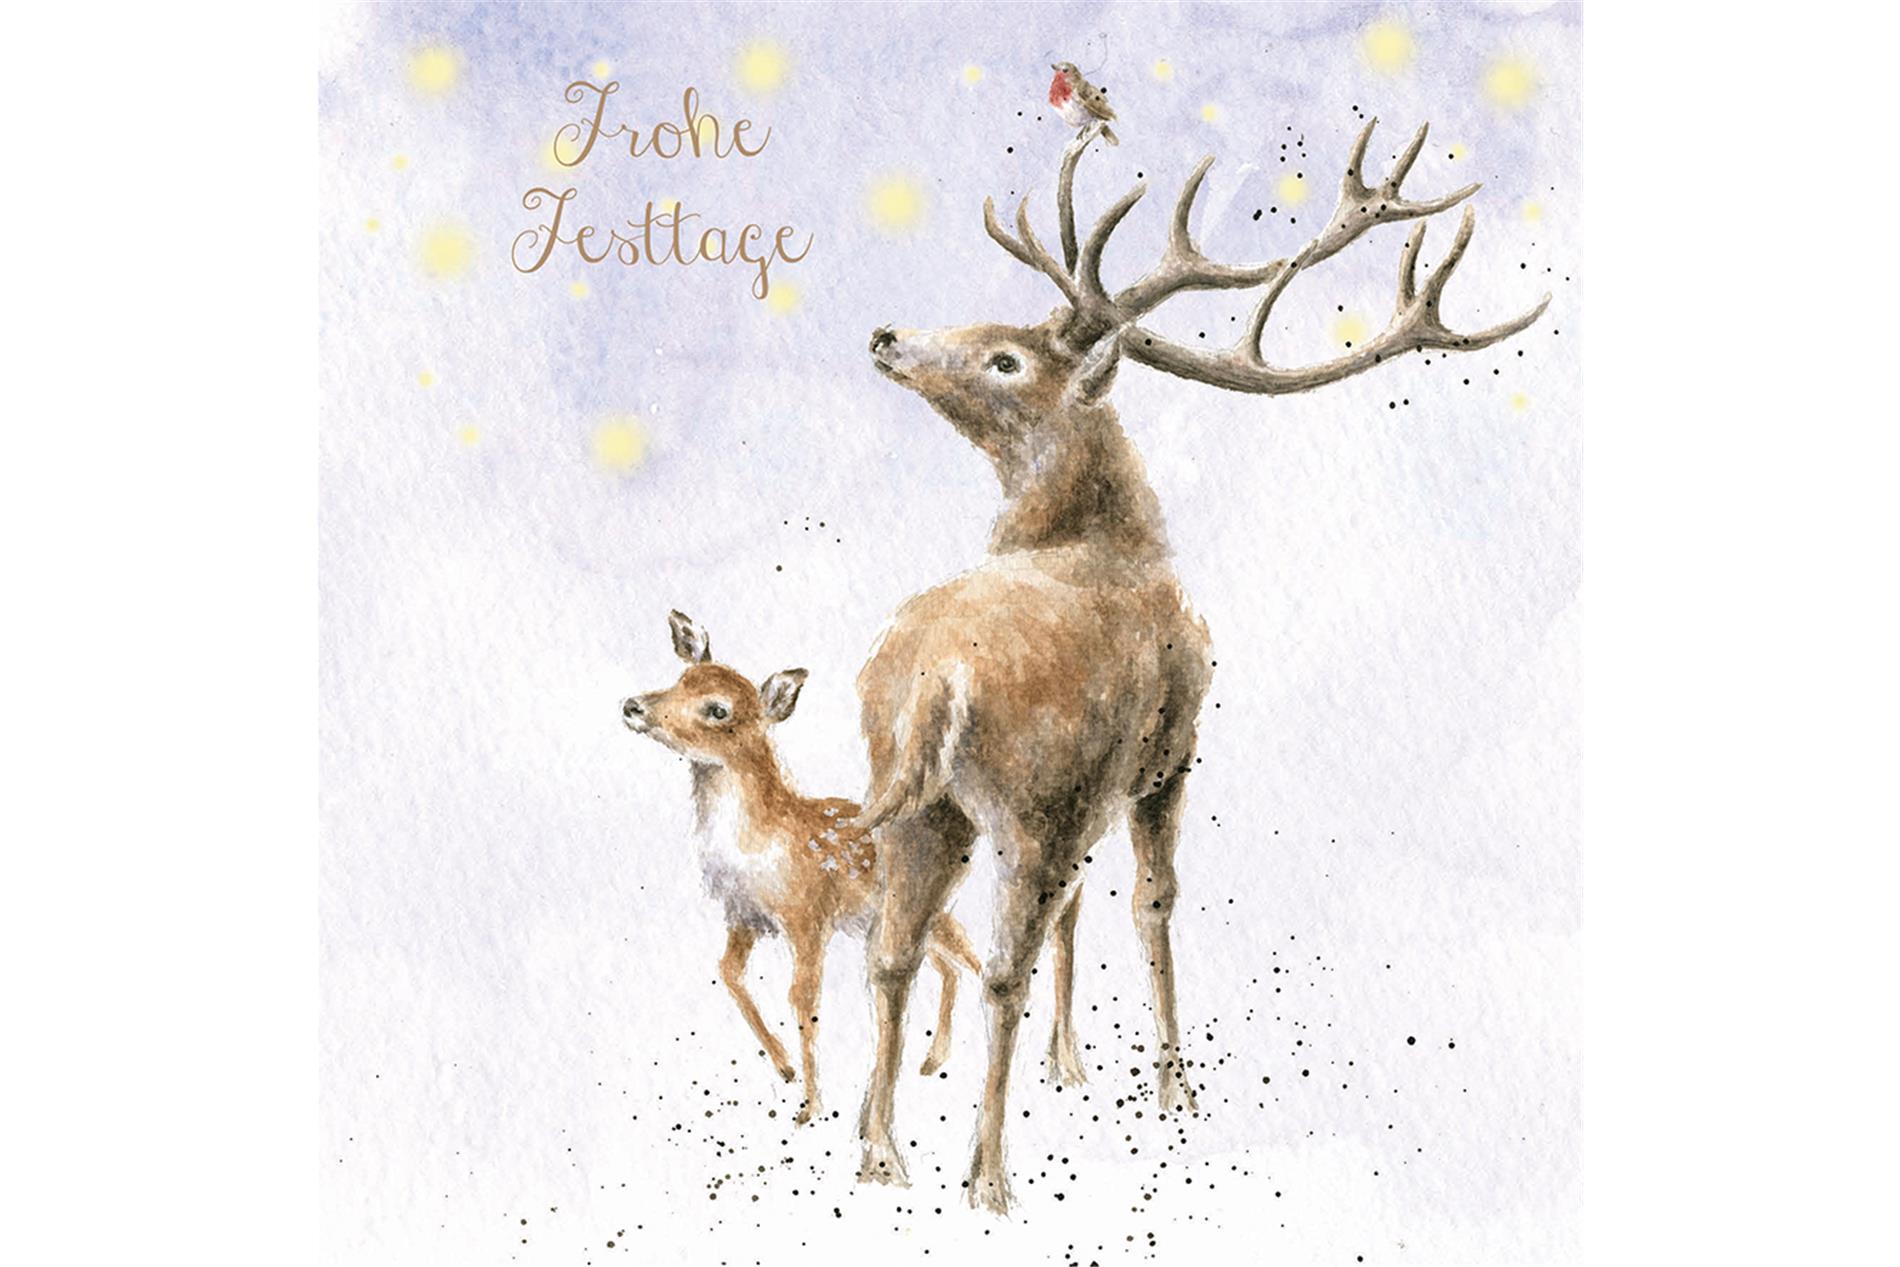 Wrendale Doppelkarte Weihnachten mit Umschlag, Frohe Festtage, Motiv Reh & Kitz "The Stars in the Bright sky"